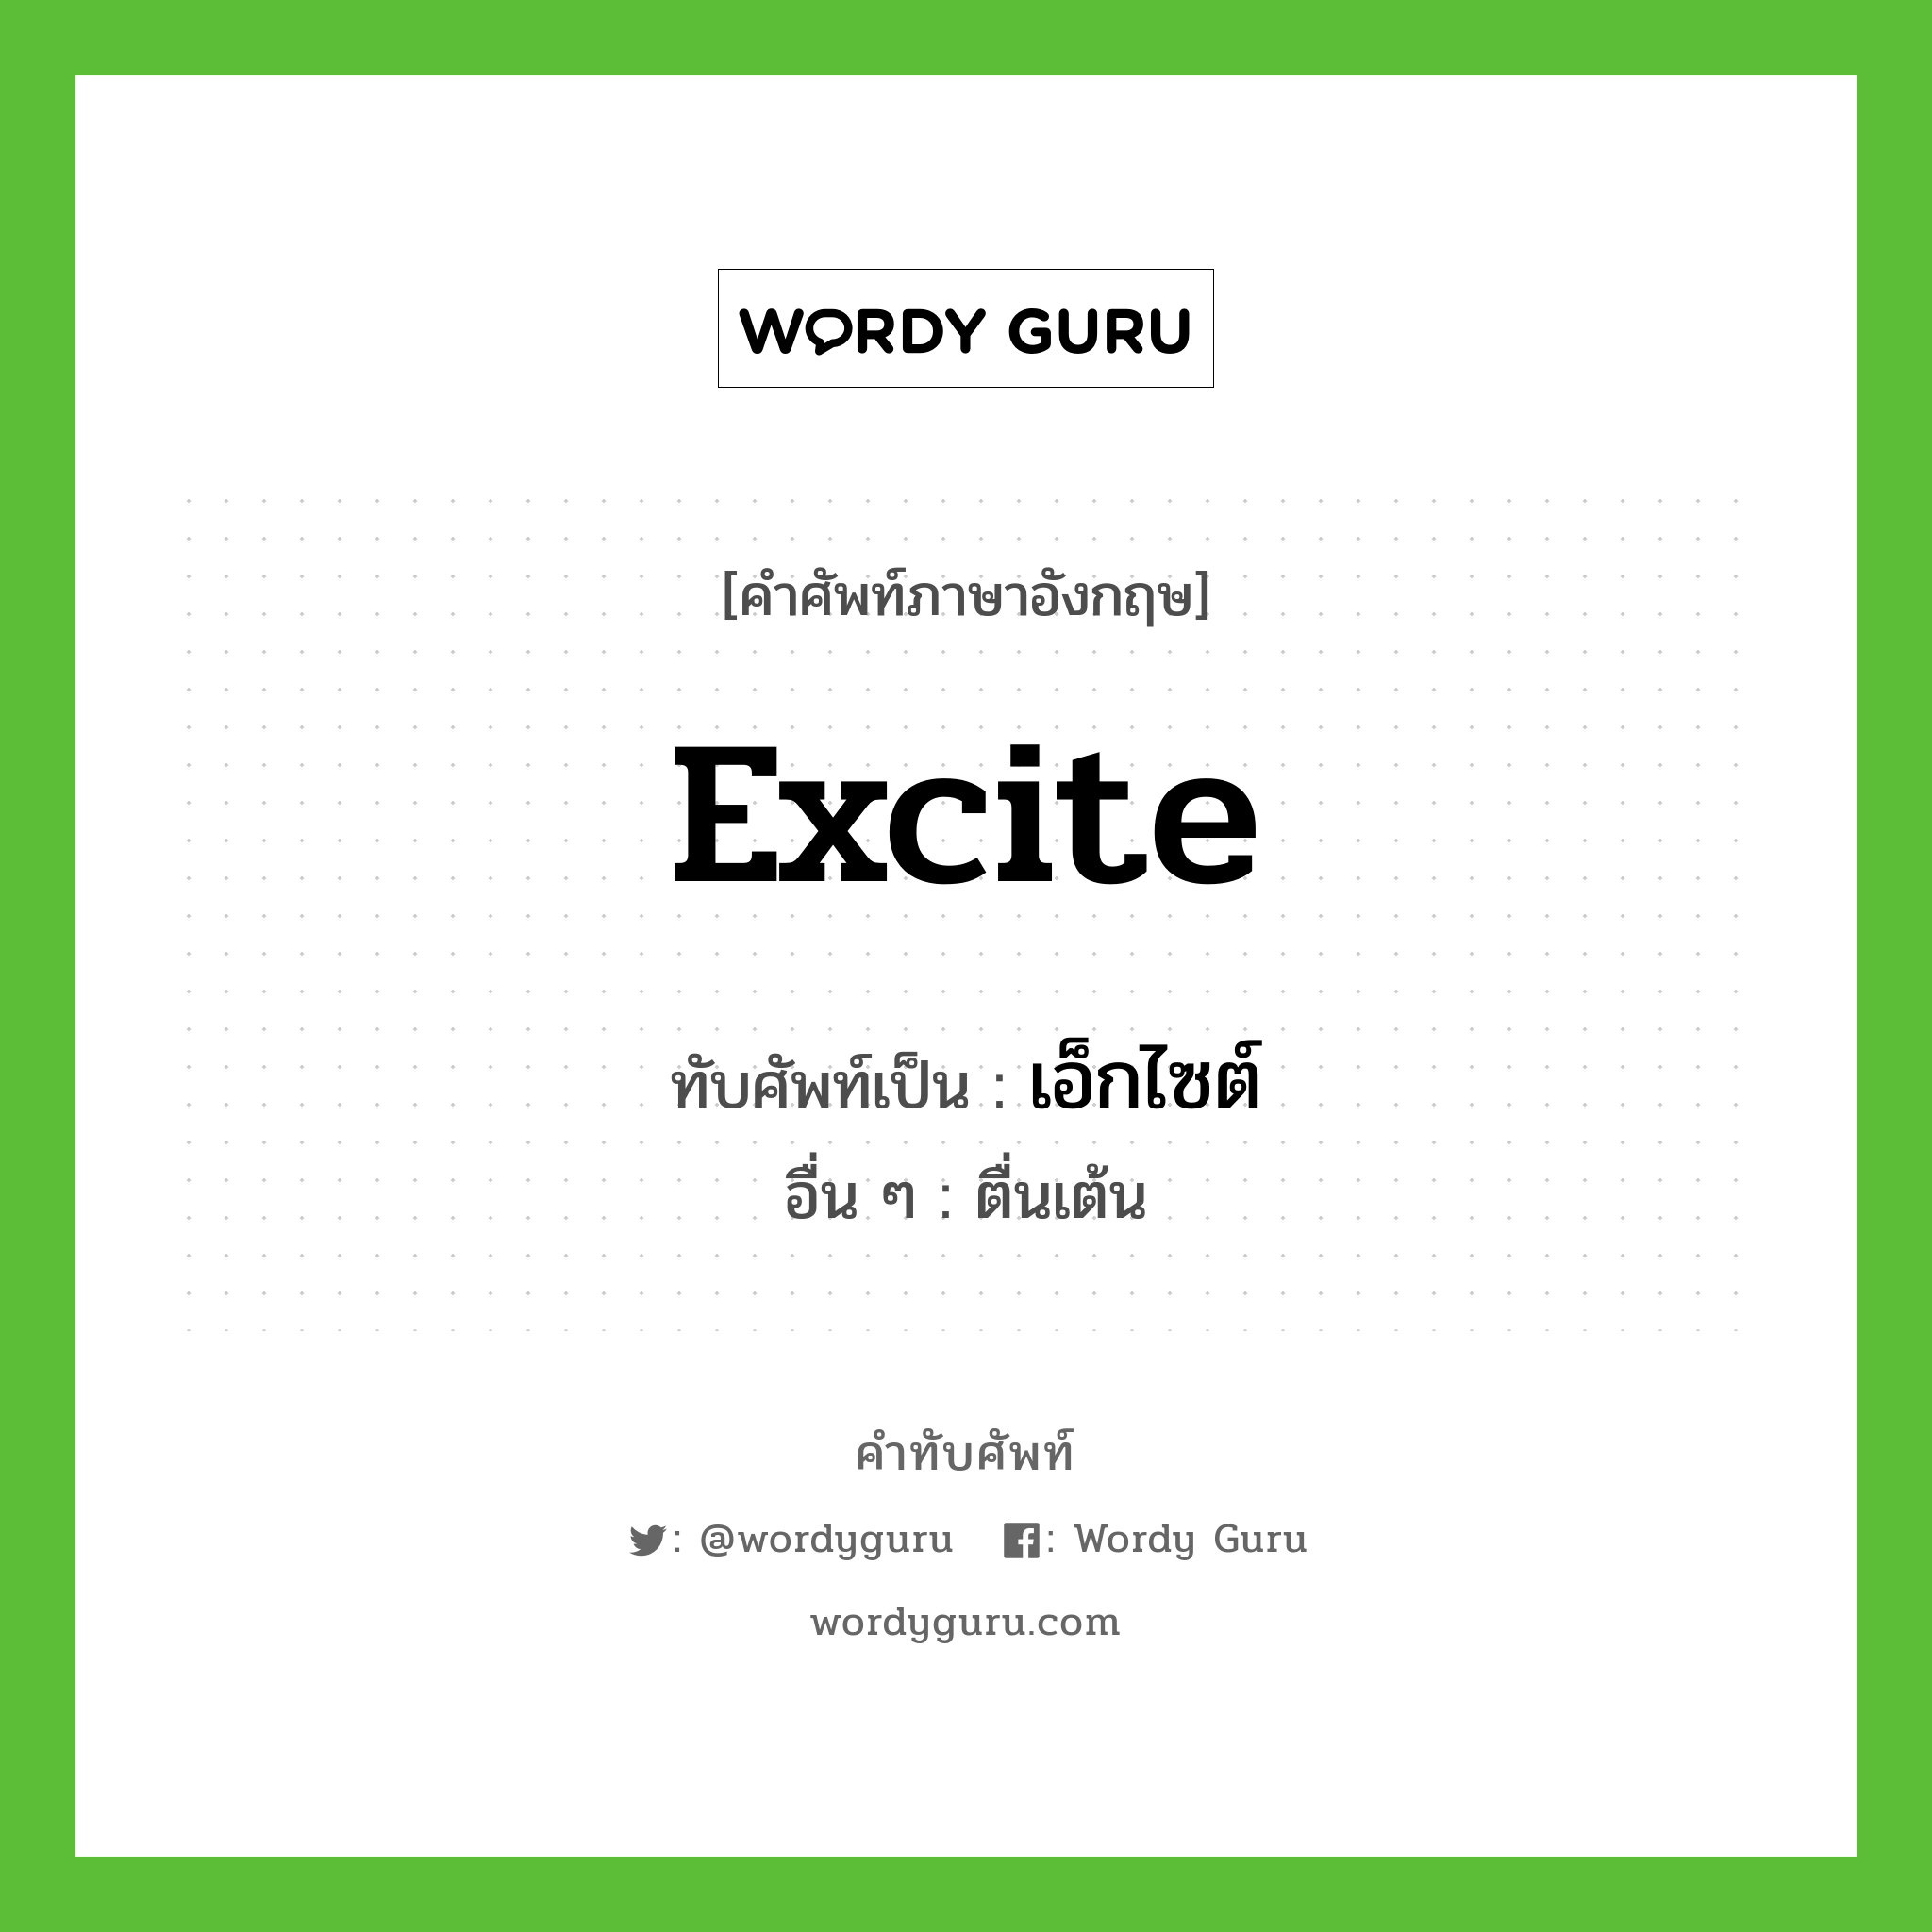 excite เขียนเป็นคำไทยว่าอะไร?, คำศัพท์ภาษาอังกฤษ excite ทับศัพท์เป็น เอ็กไซต์ อื่น ๆ ตื่นเต้น